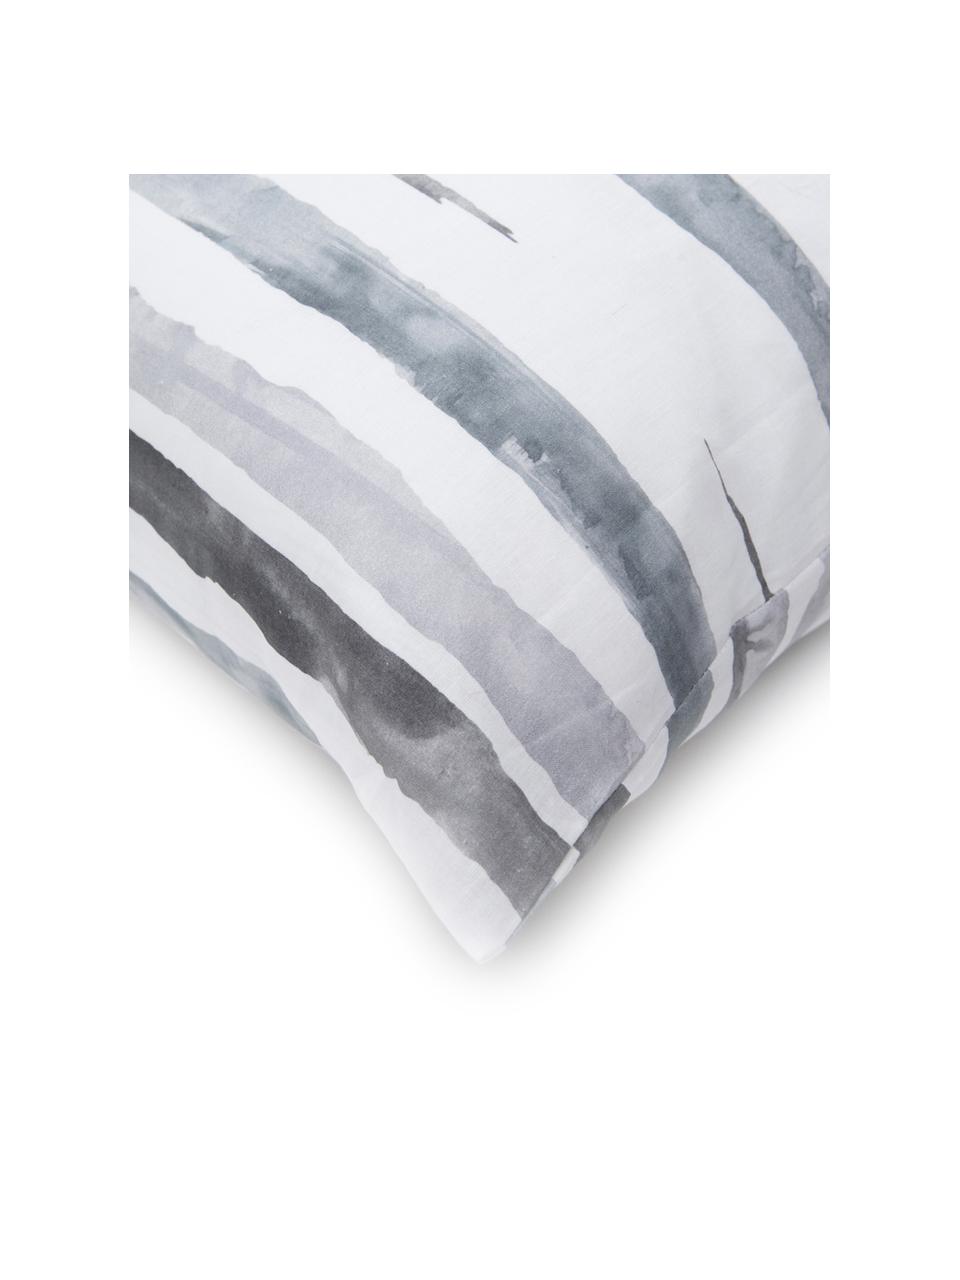 Fundas de almohada Capri, 2 uds., 50 x 80 cm, 100% algodón
El algodón da una sensación agradable y suave en la piel, absorbe bien la humedad y es adecuado para personas alérgicas, Blanco, tonos de gris, An 50 x L 80 cm